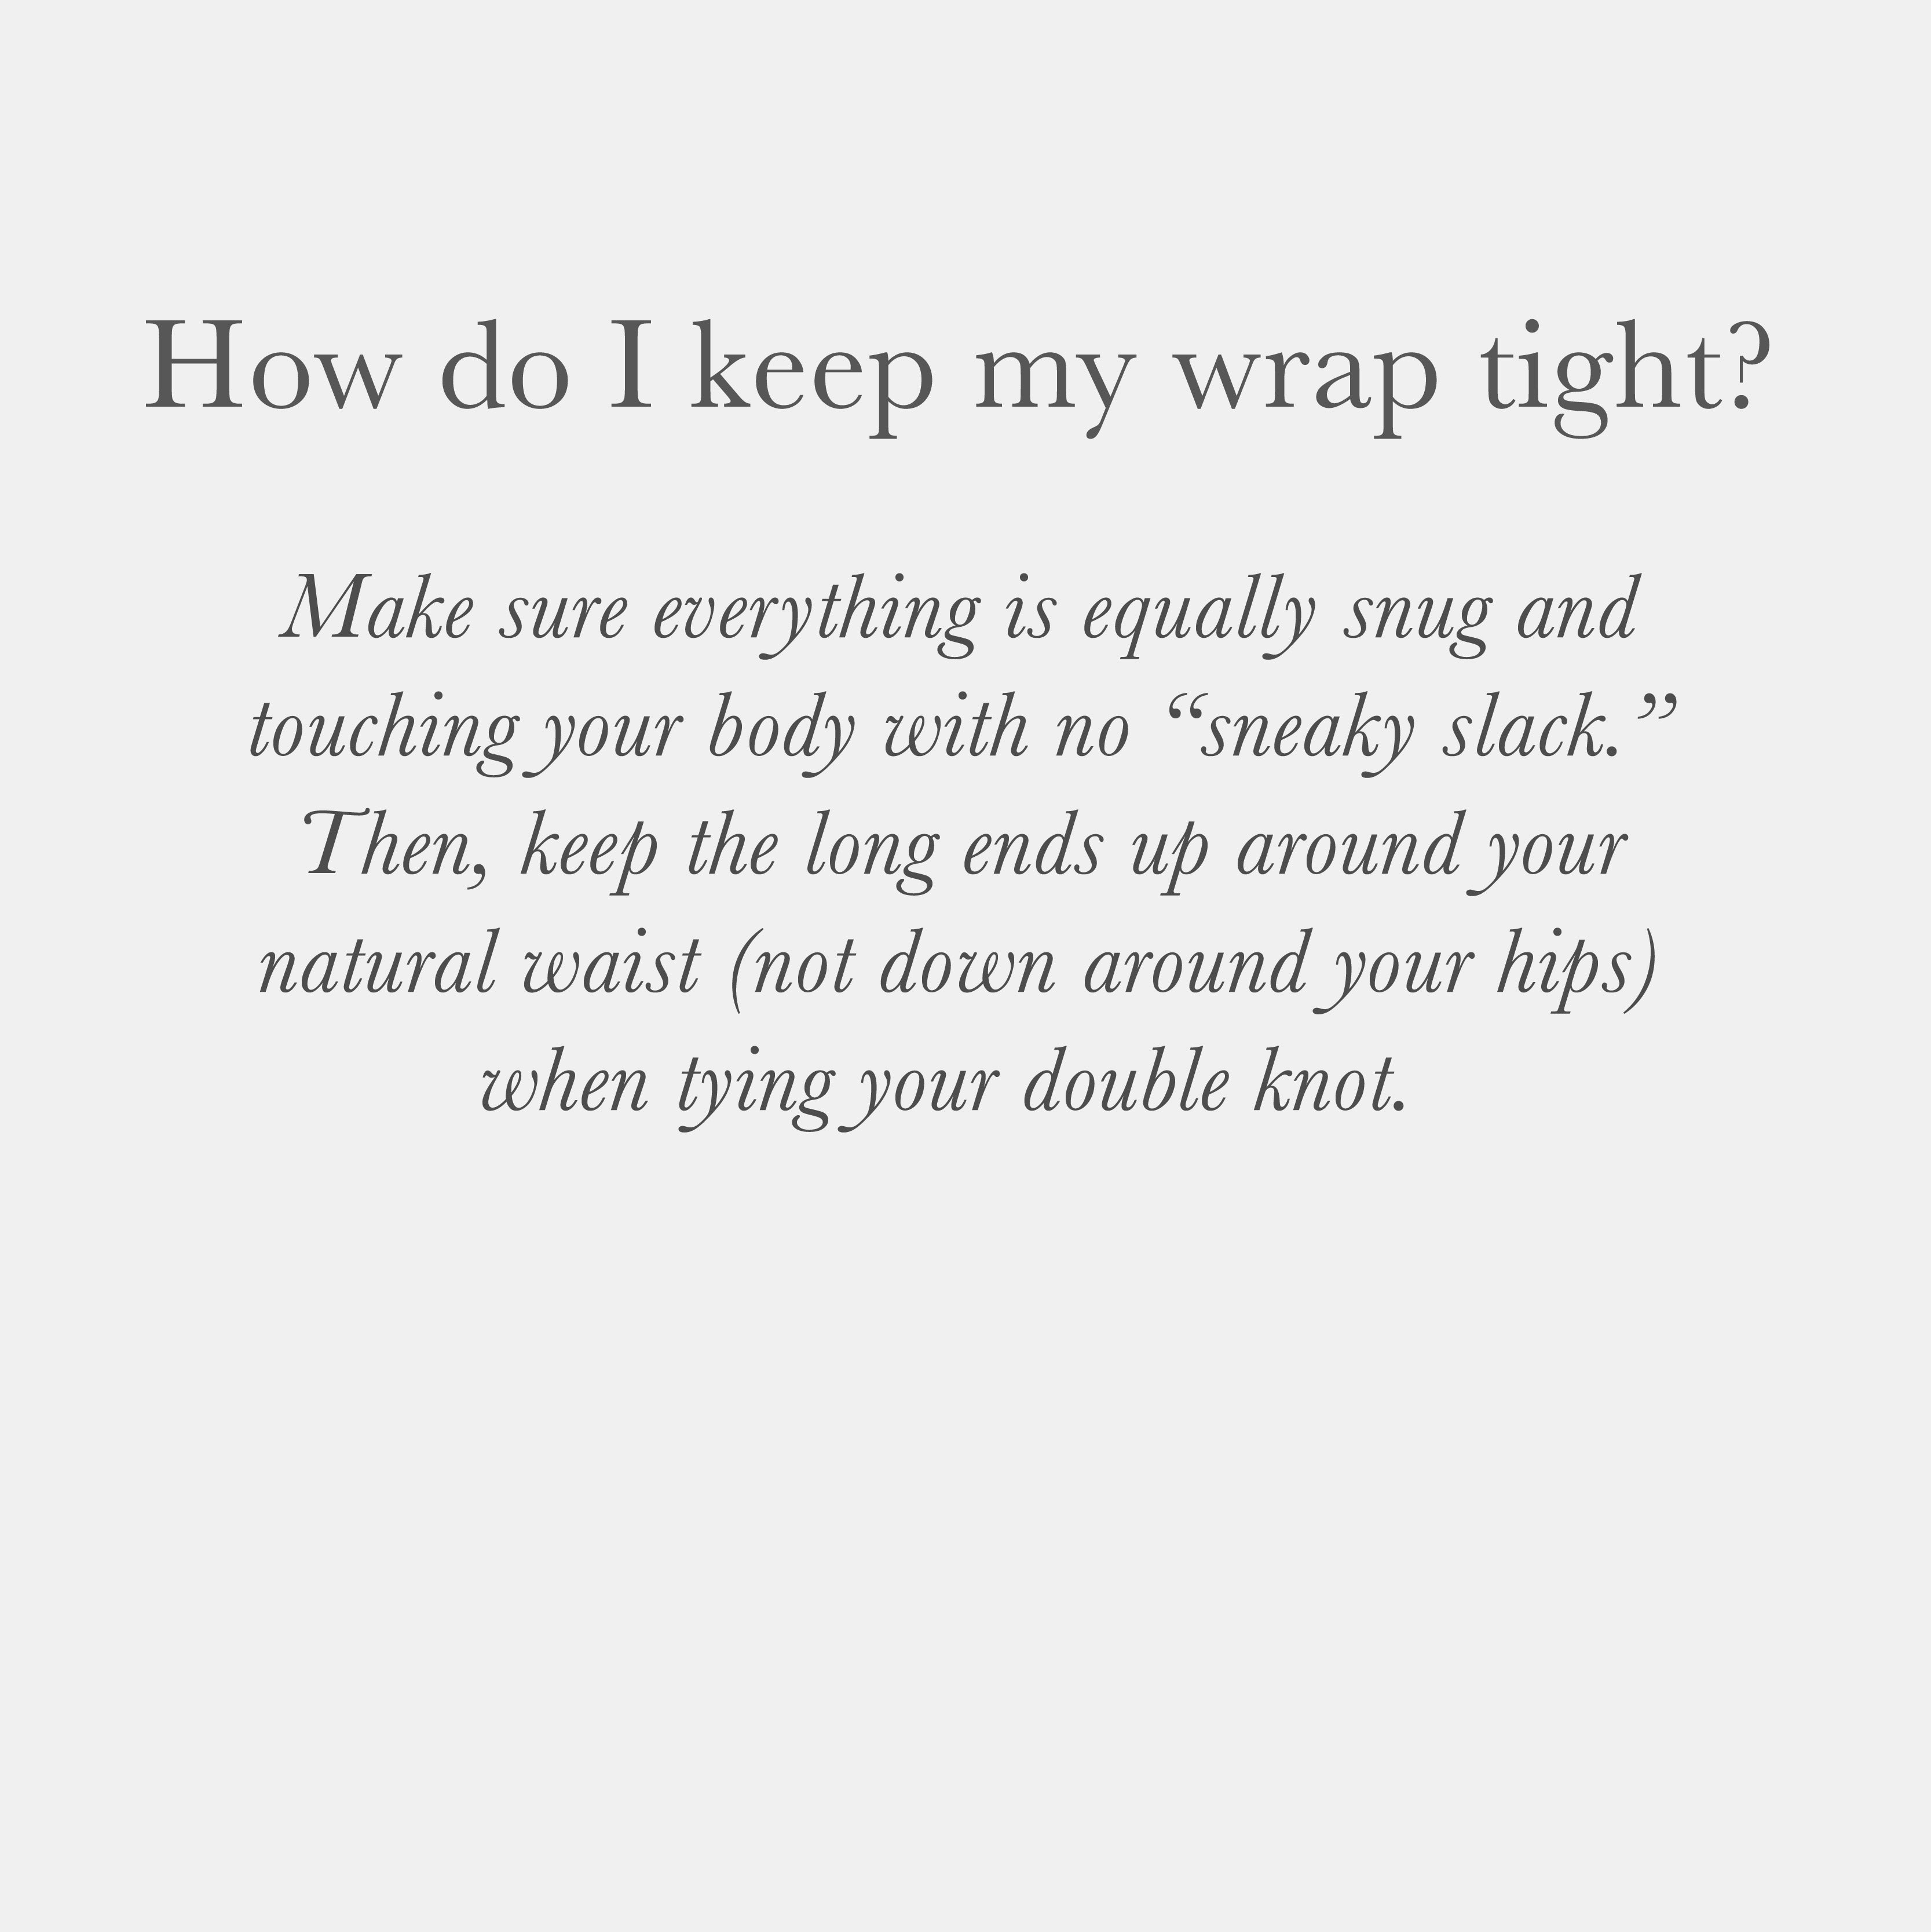 How do I keep my wrap tight?